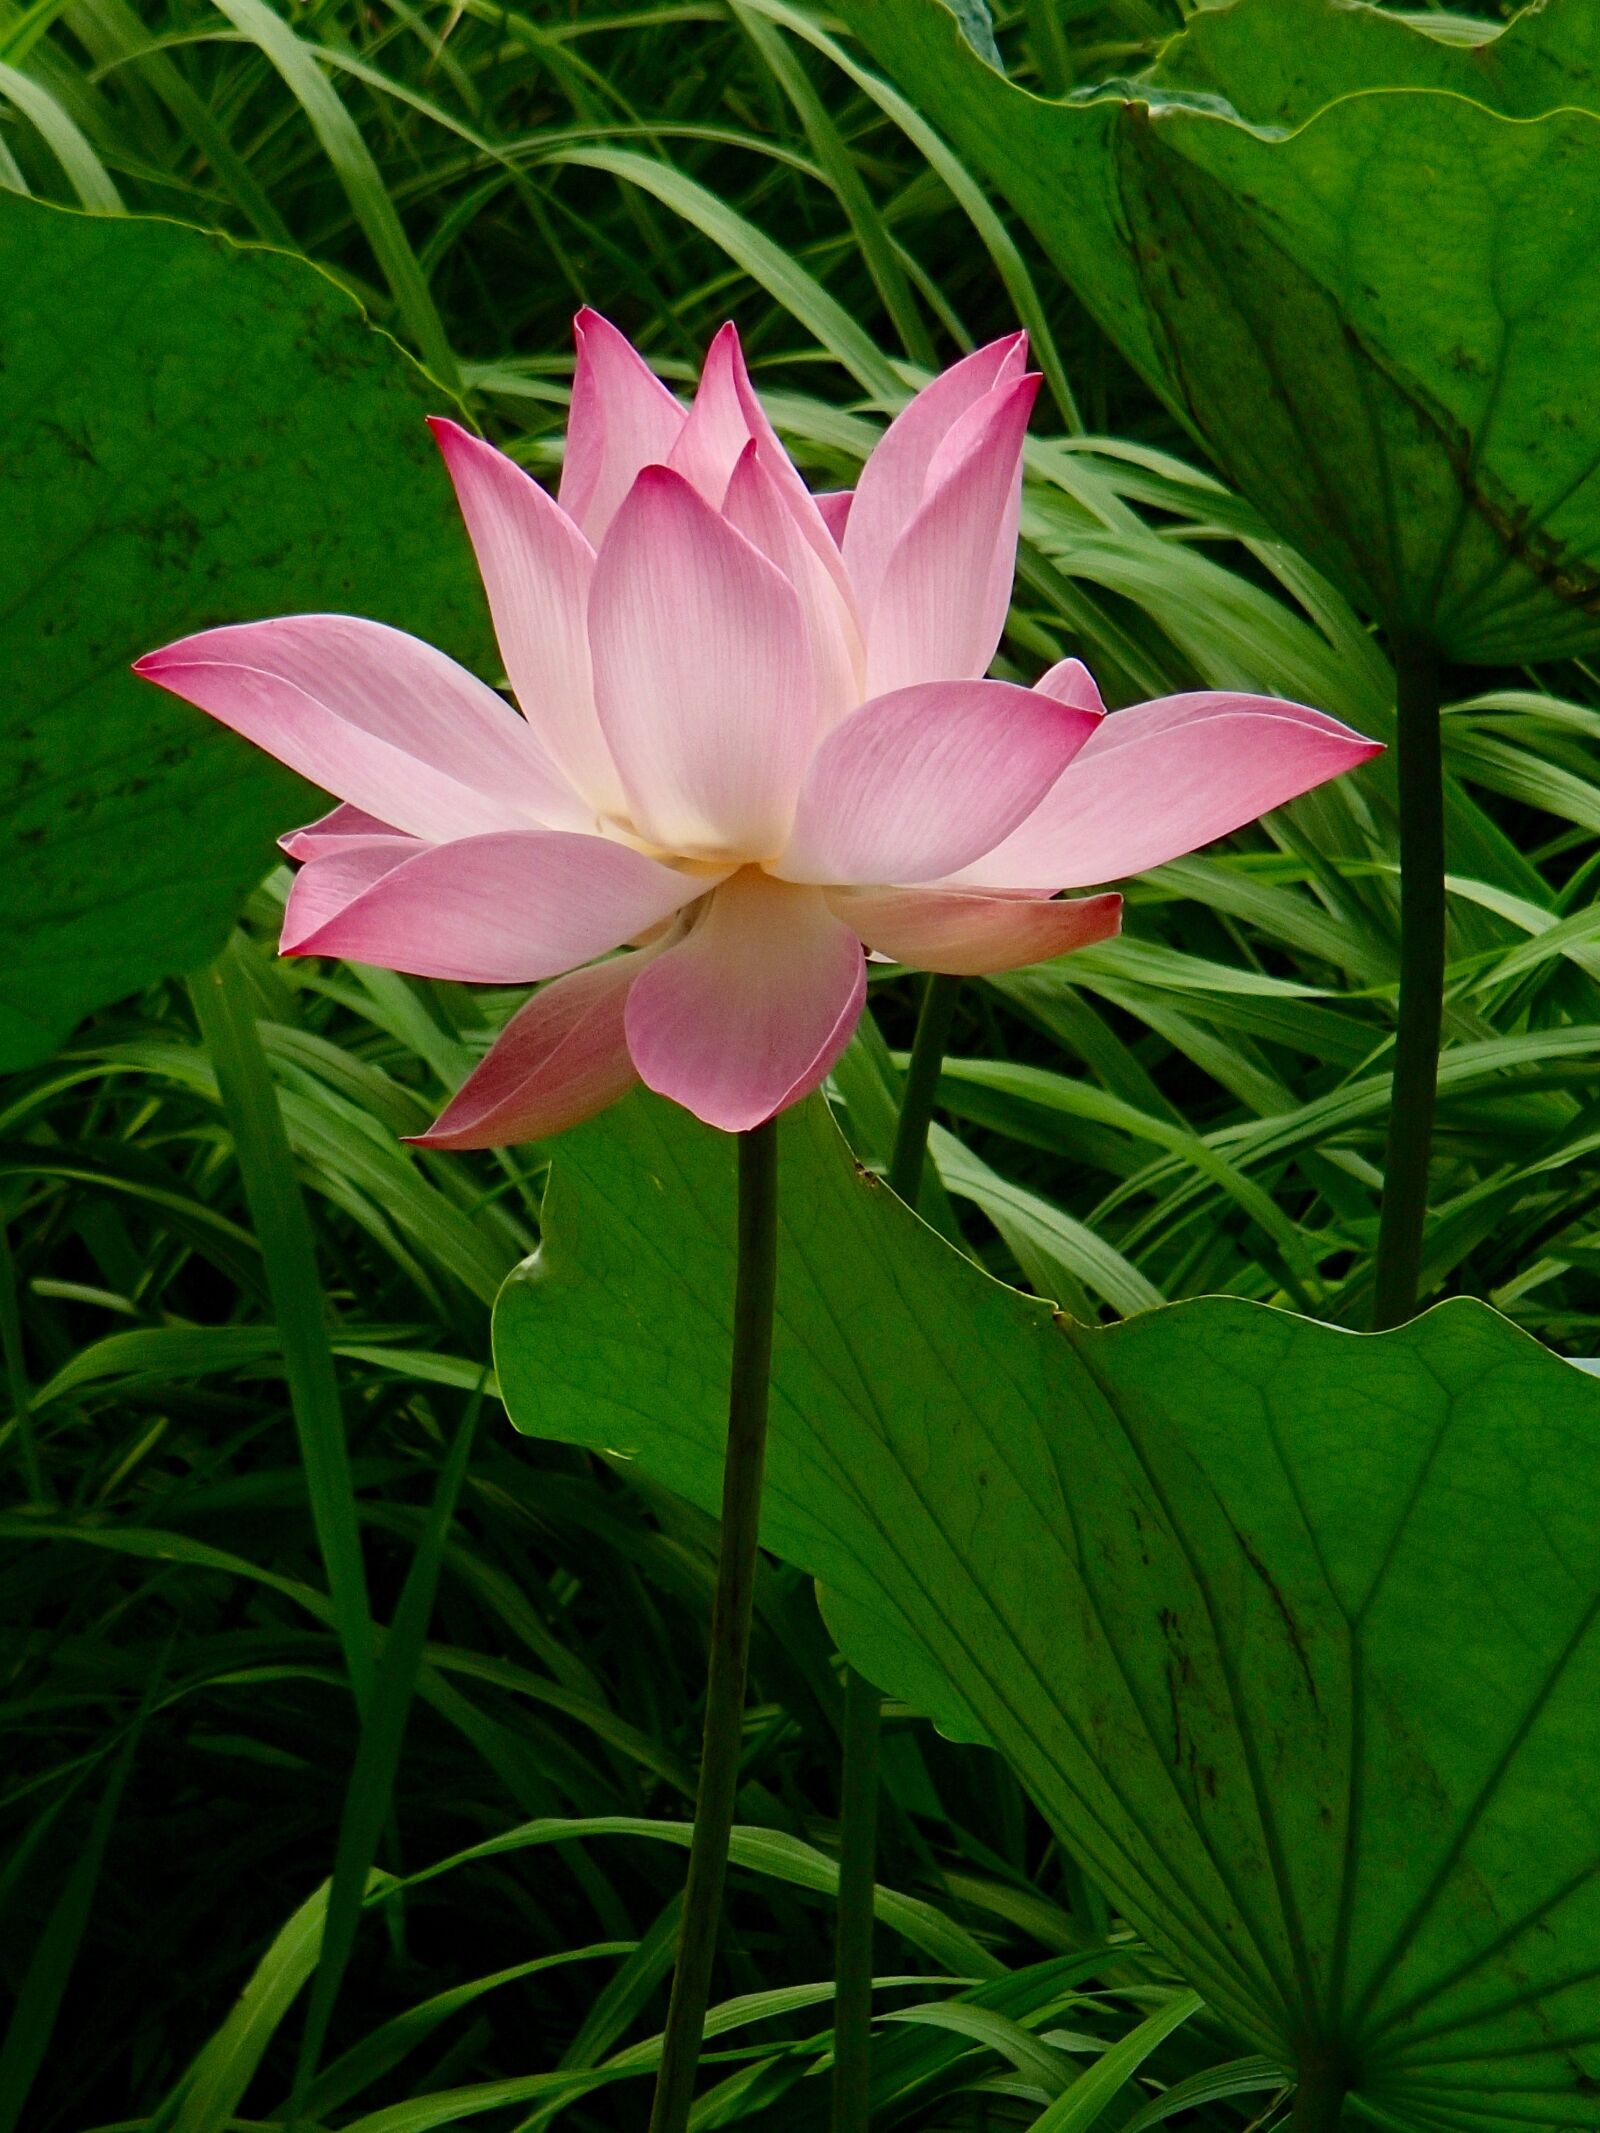 Olympus TG-820 sample photo. Pink, vietnam, lotus photography